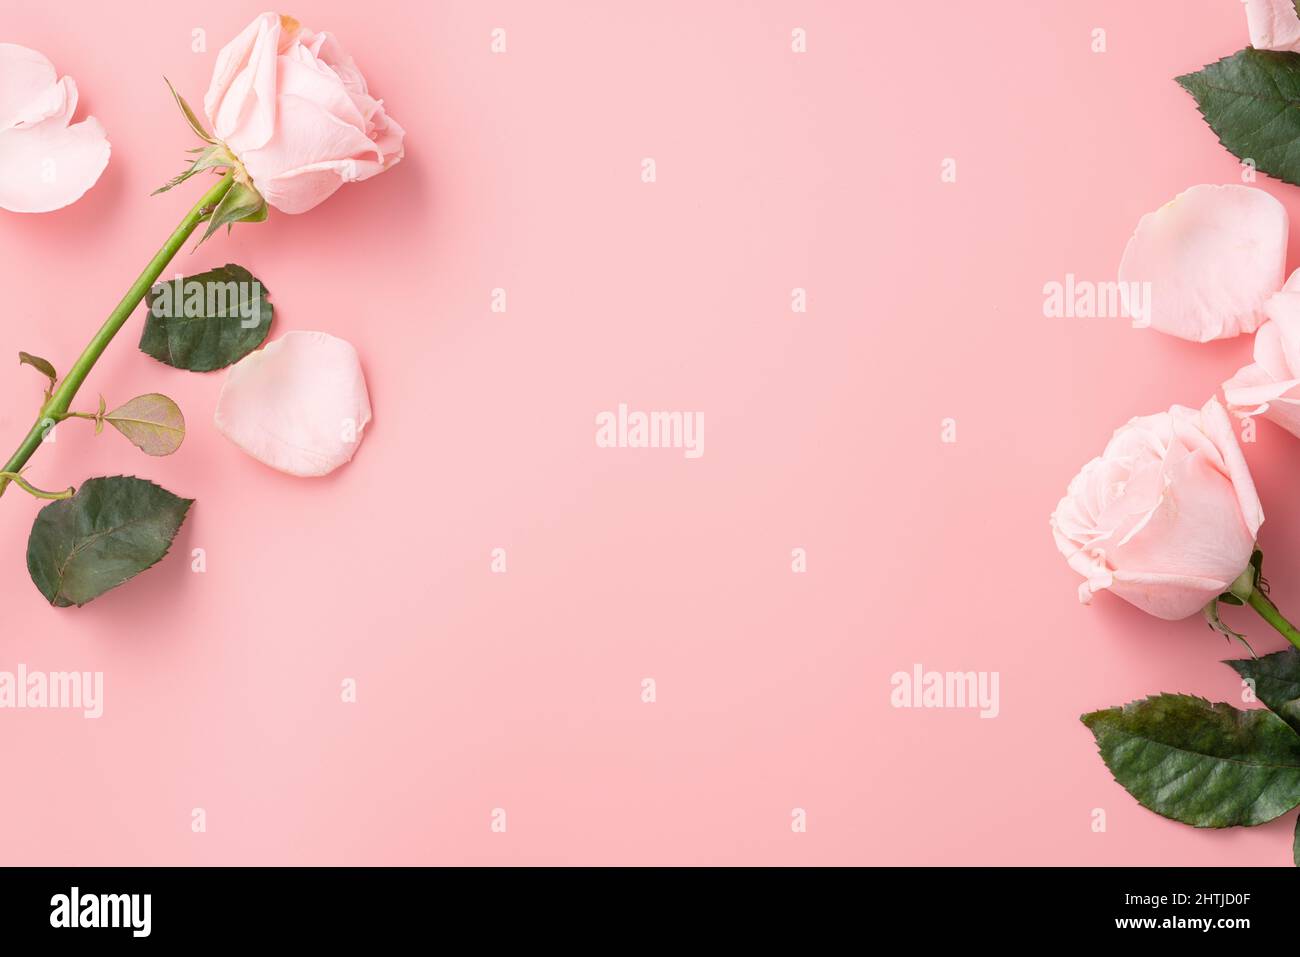 Dành tặng món quà đặc biệt nhất cho mẹ của bạn vào ngày Quốc tế Phụ nữ với những bông hoa hồng tuyệt vời này. Cảm nhận tình yêu và sự quan tâm từ mẹ được biểu đạt qua mùi hương tinh tế của những bông hoa đầy ý nghĩa.